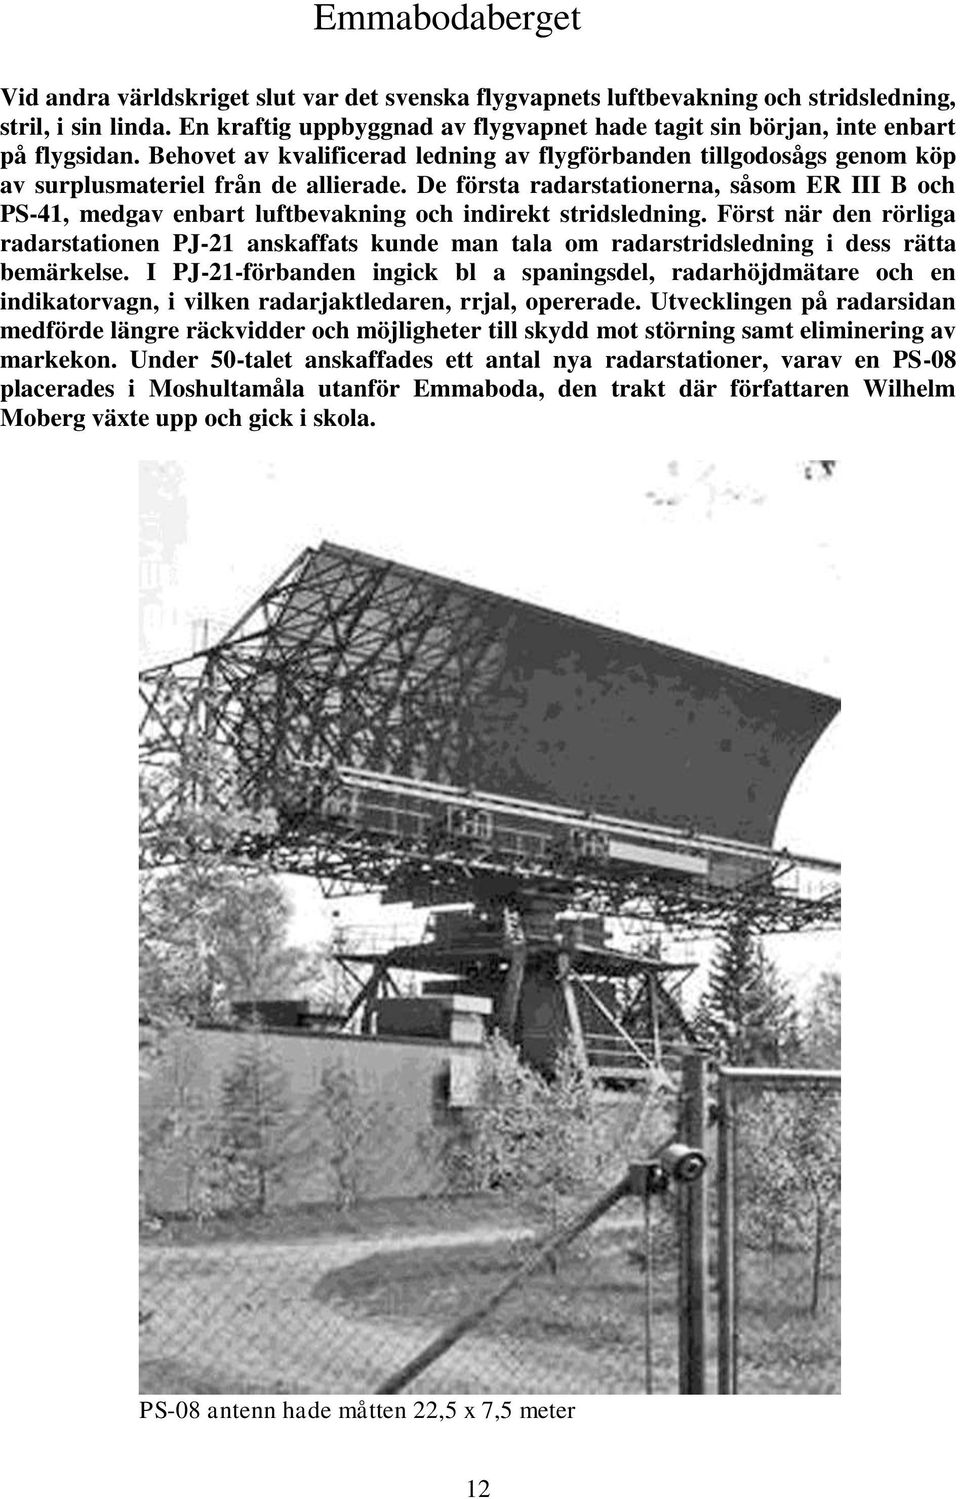 De första radarstationerna, såsom ER III B och PS-41, medgav enbart luftbevakning och indirekt stridsledning.